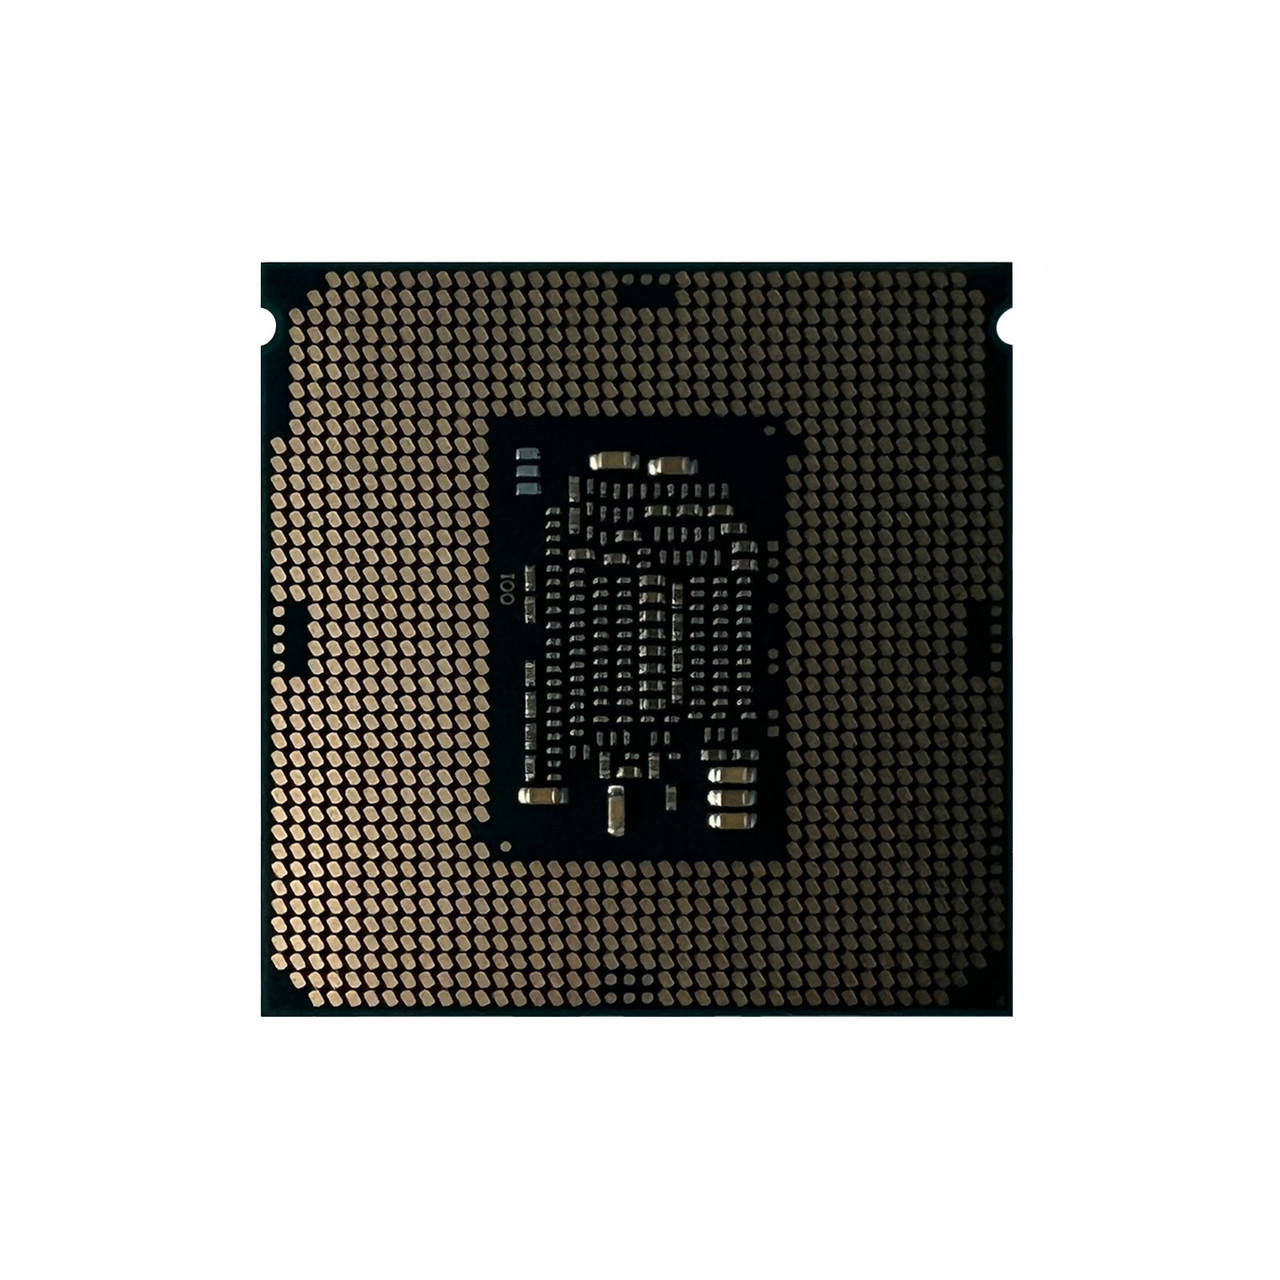 HP 822425-L21 DL20 Gen9 E3-1220 V5 QC 3.0Ghz 8MB 8GTs Processor